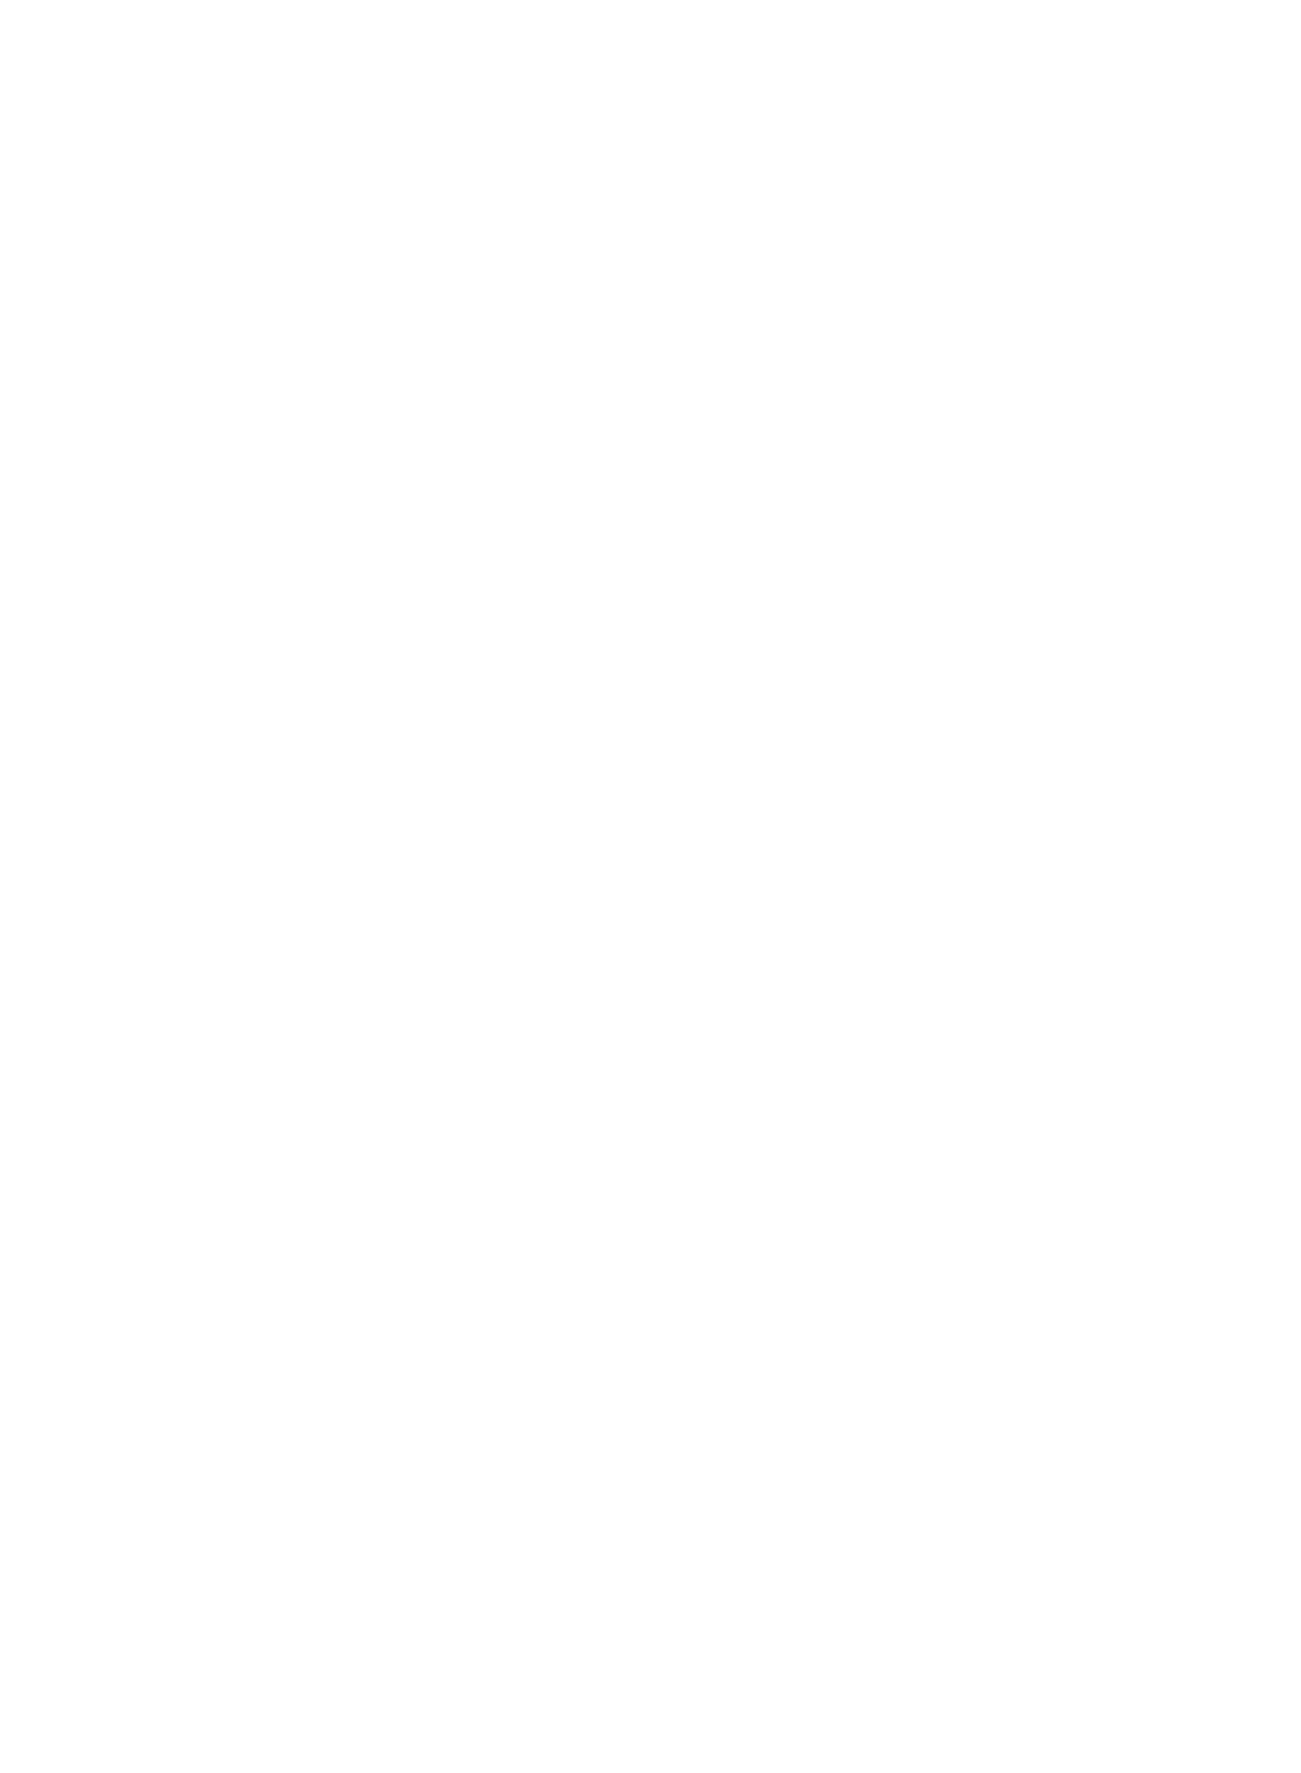 Gray Floral Nursery & Garden Centre Reverse Logo